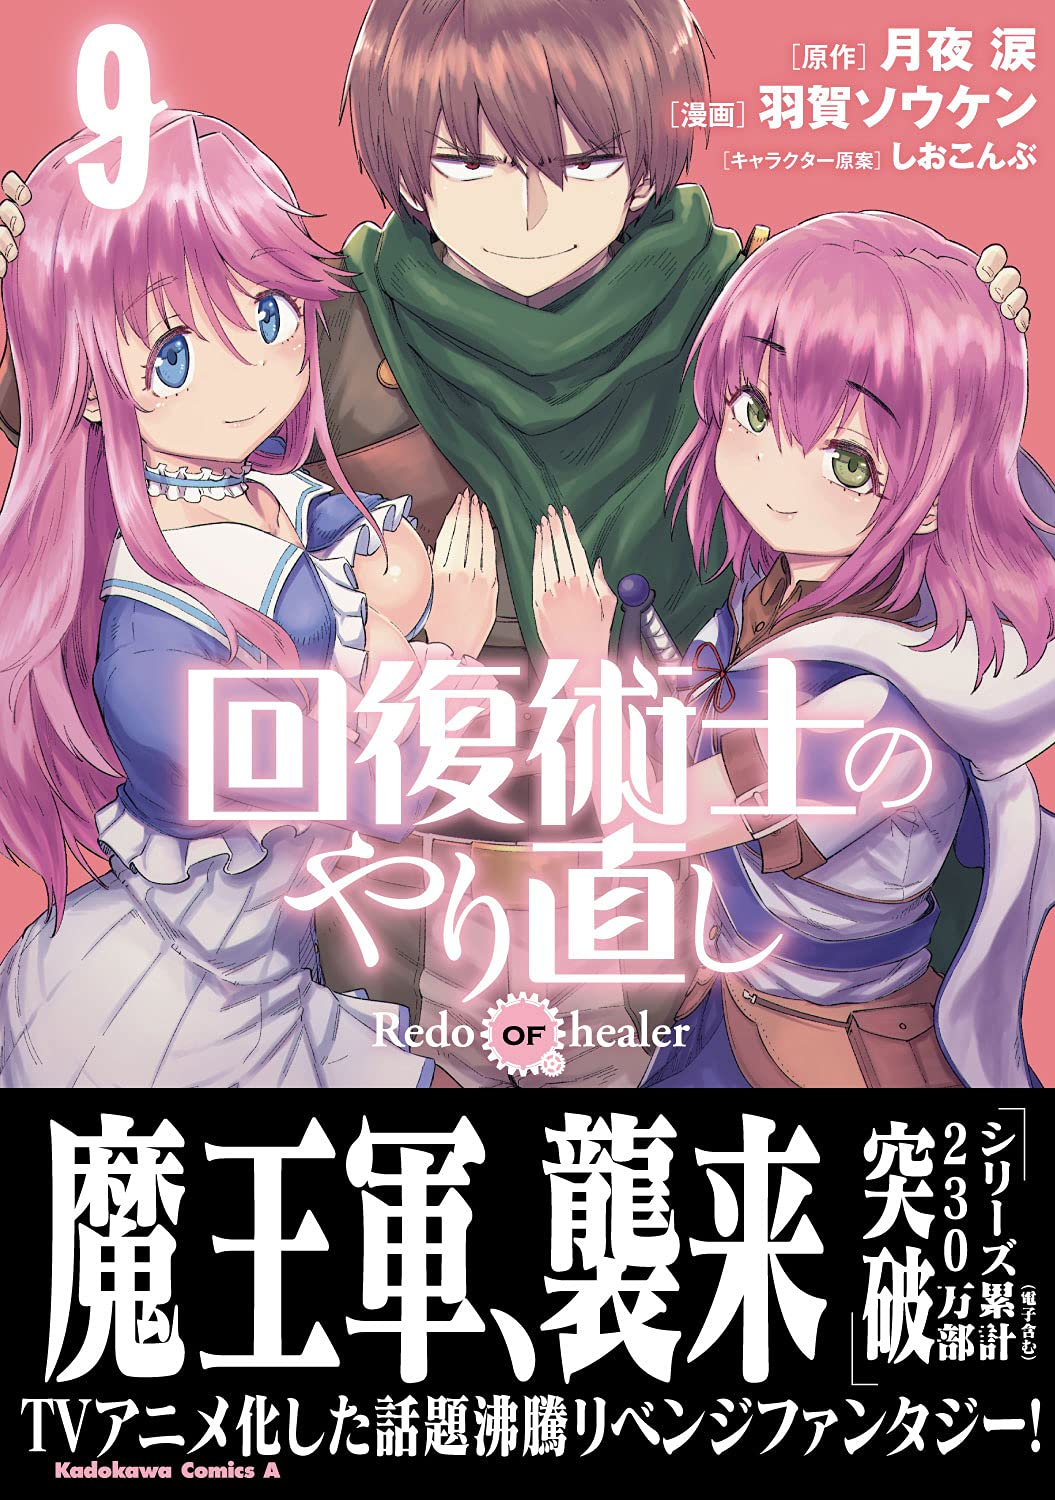 Redo of Healer light novel exceeds 2.3 million copies in circulation